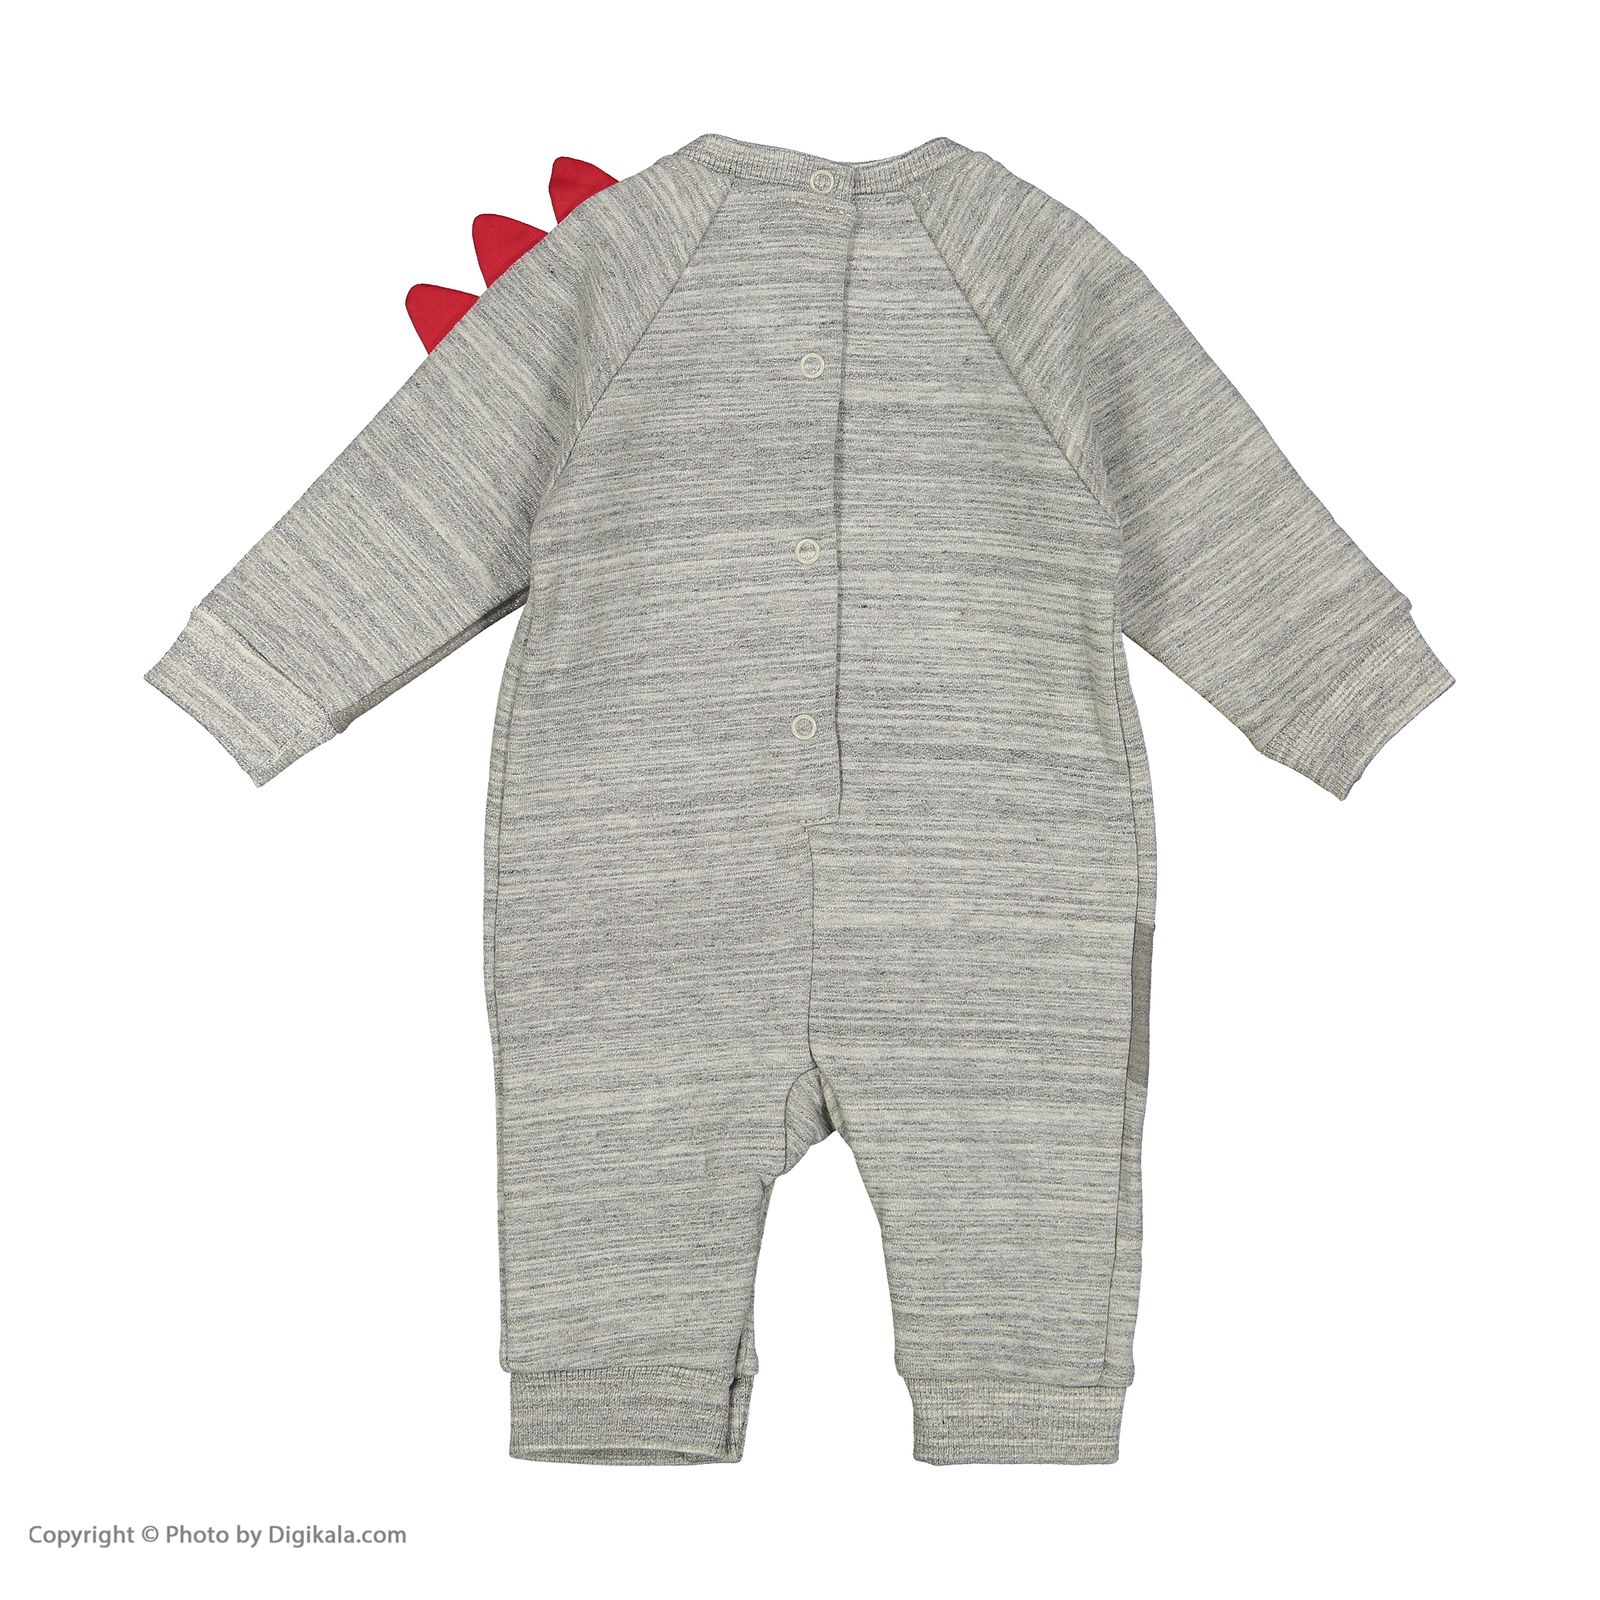 ست 3 تکه لباس نوزادی پسرانه نیلی مدل 21611444-gray -  - 6